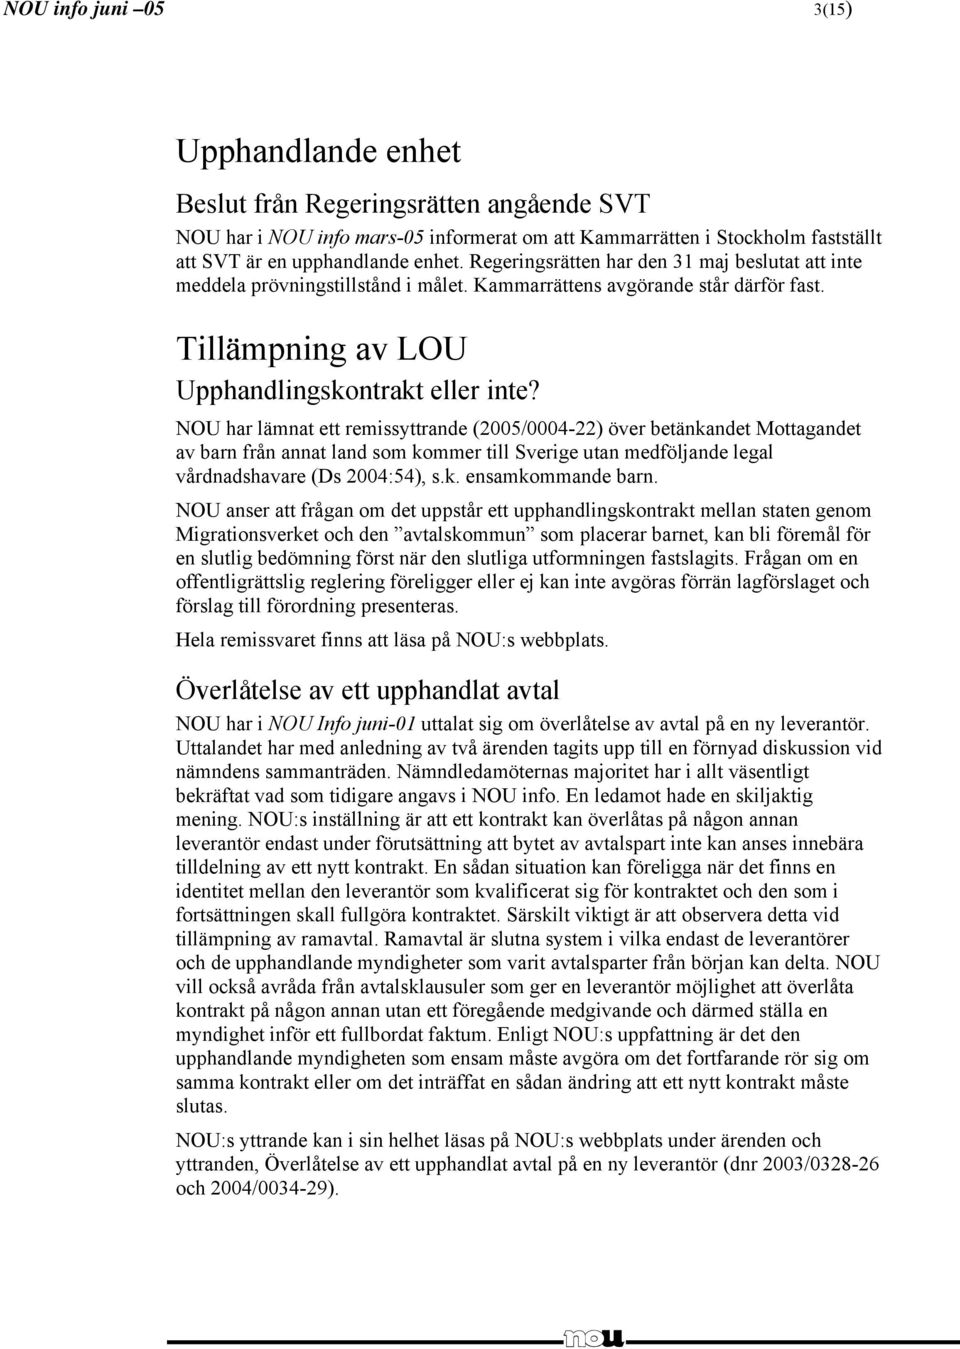 NOU har lämnat ett remissyttrande (2005/0004-22) över betänkandet Mottagandet av barn från annat land som kommer till Sverige utan medföljande legal vårdnadshavare (Ds 2004:54), s.k. ensamkommande barn.